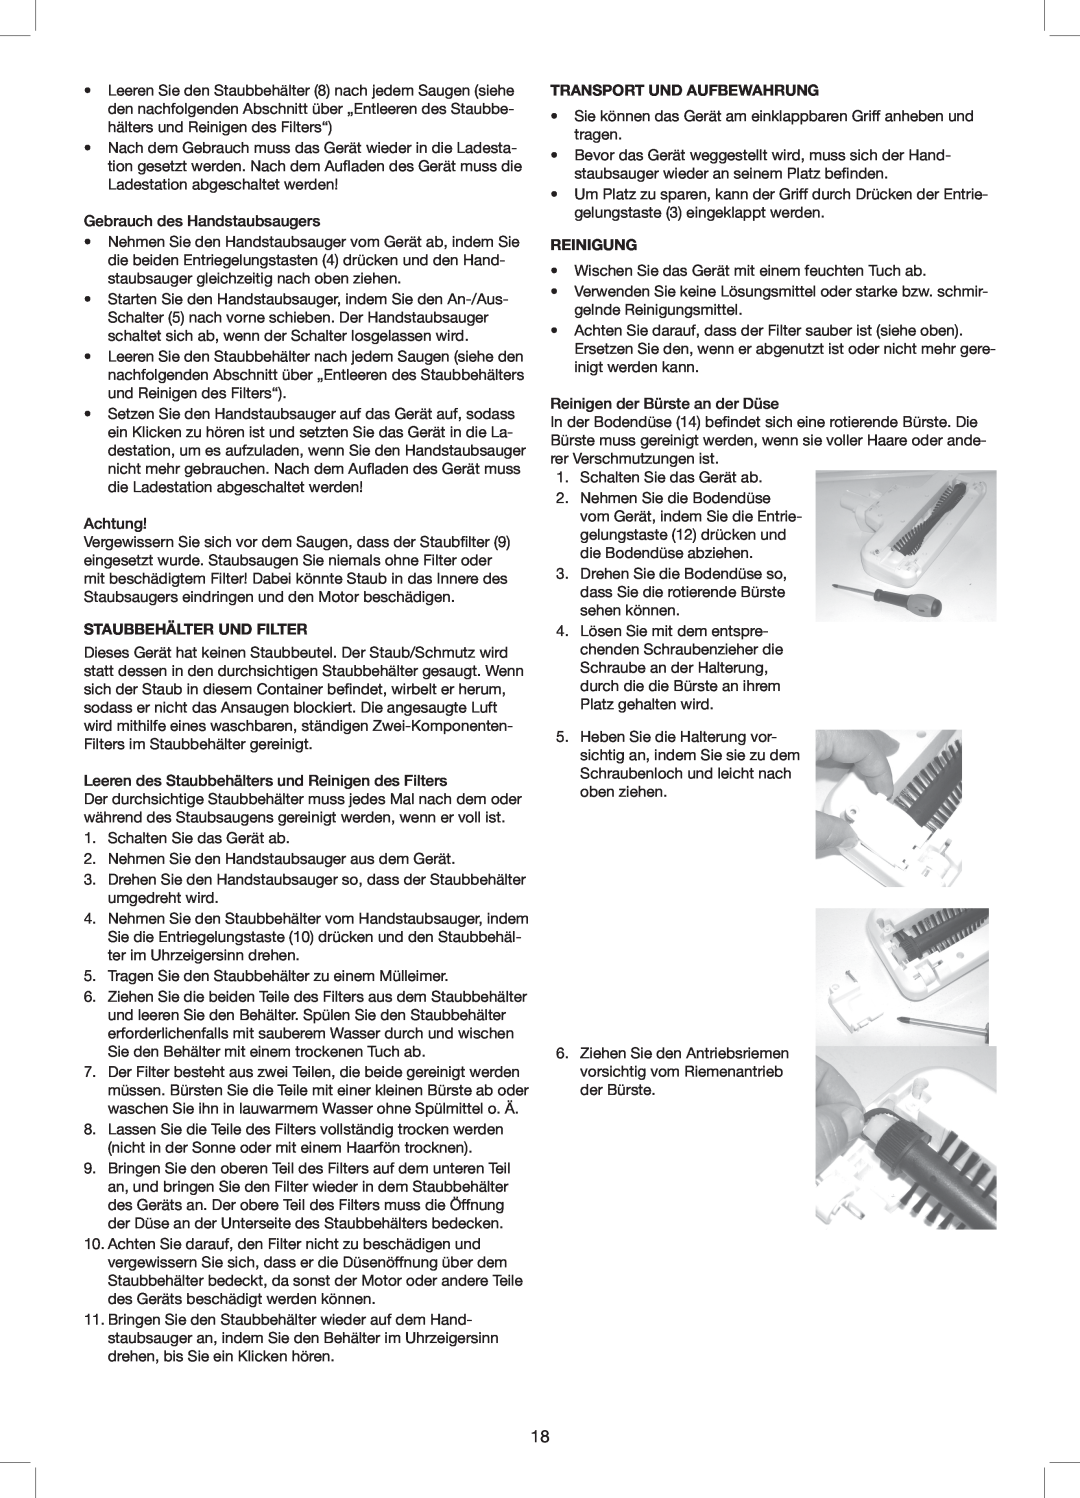 Exido 240-110 manual Staubbehälter Und Filter, Transport Und Aufbewahrung, Reinigung 